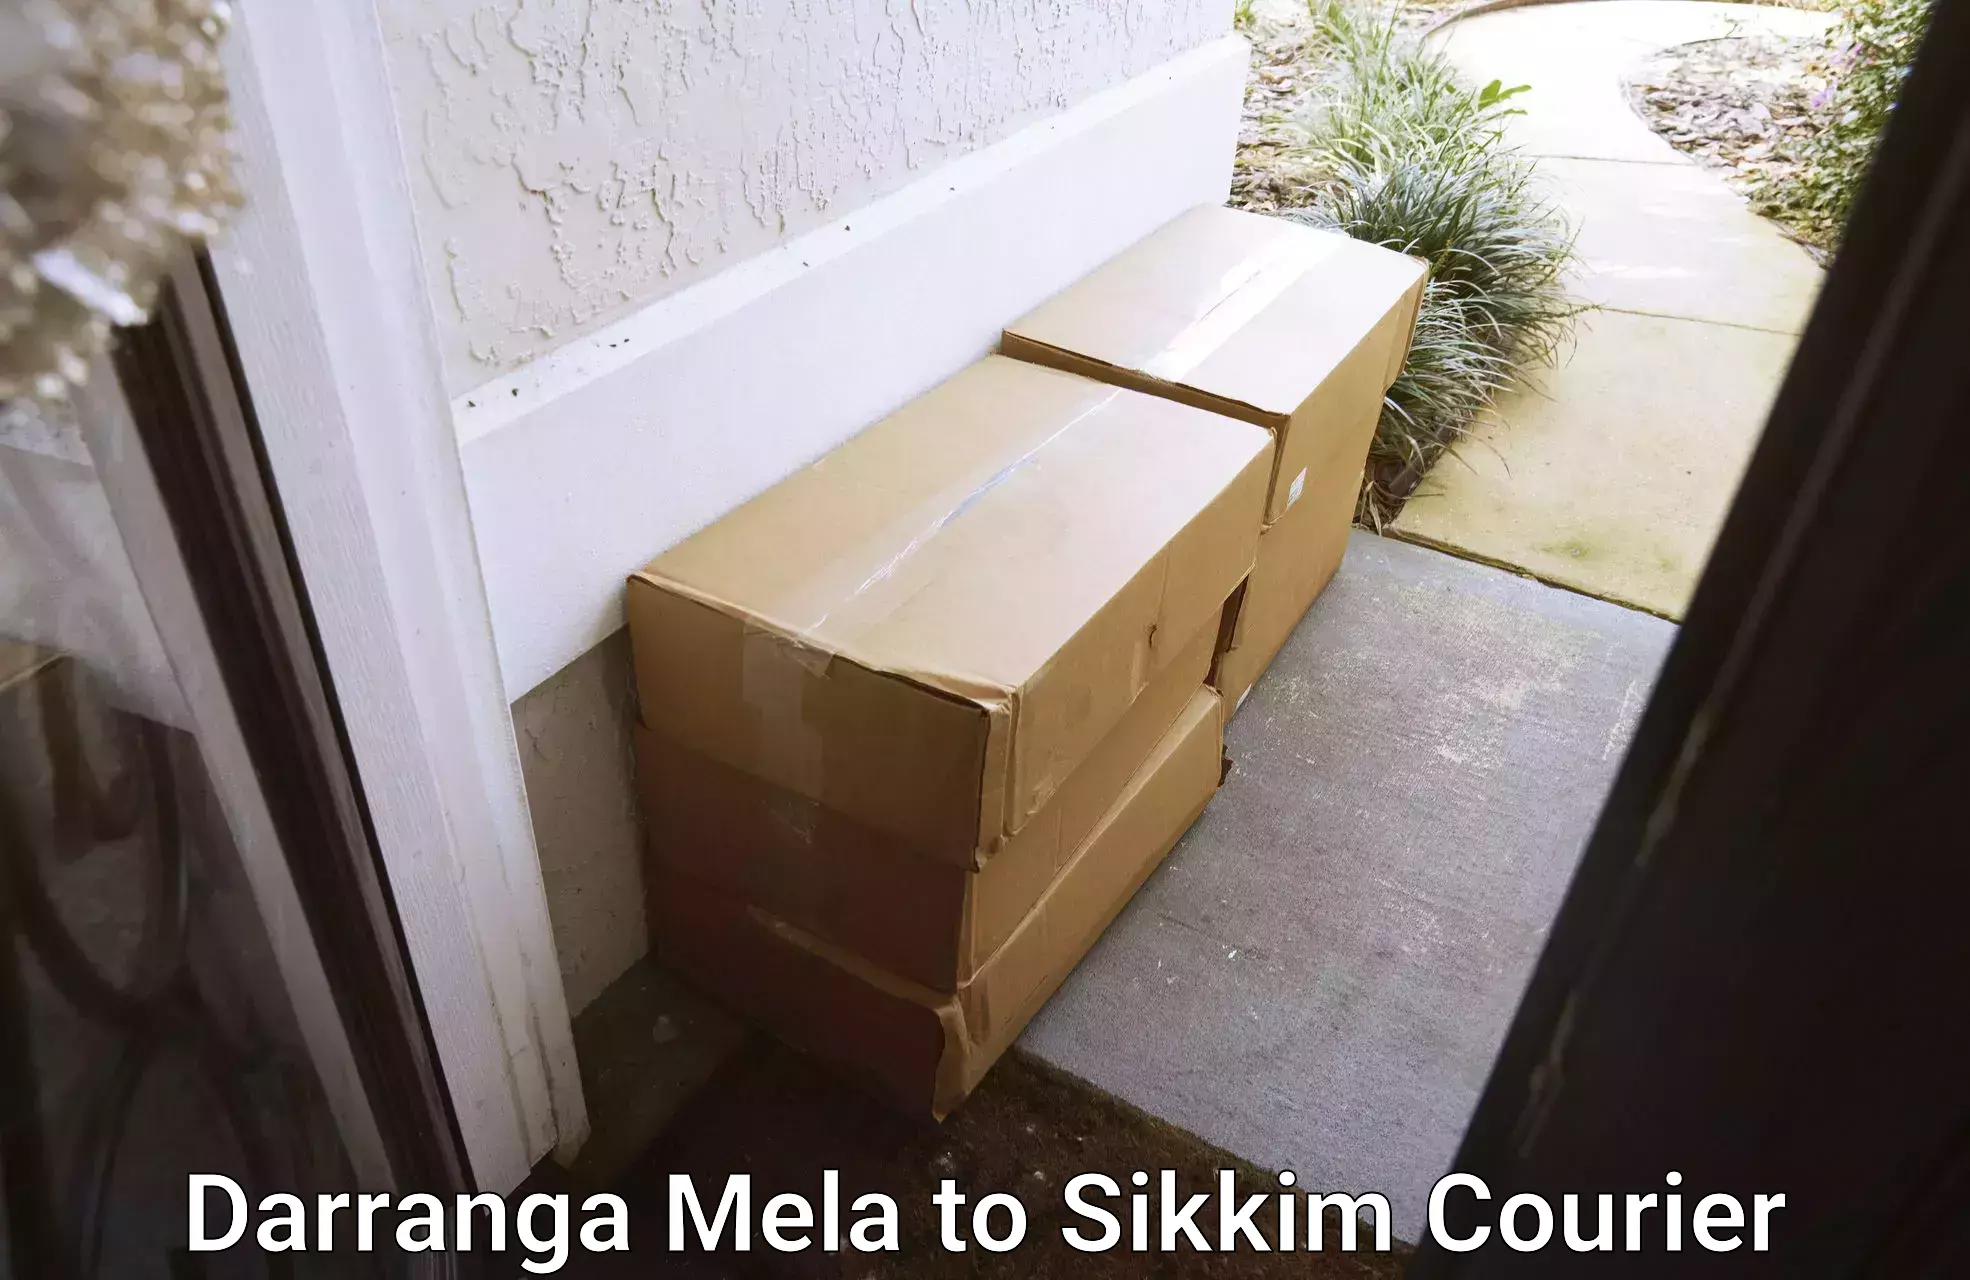 Courier membership Darranga Mela to Ranipool